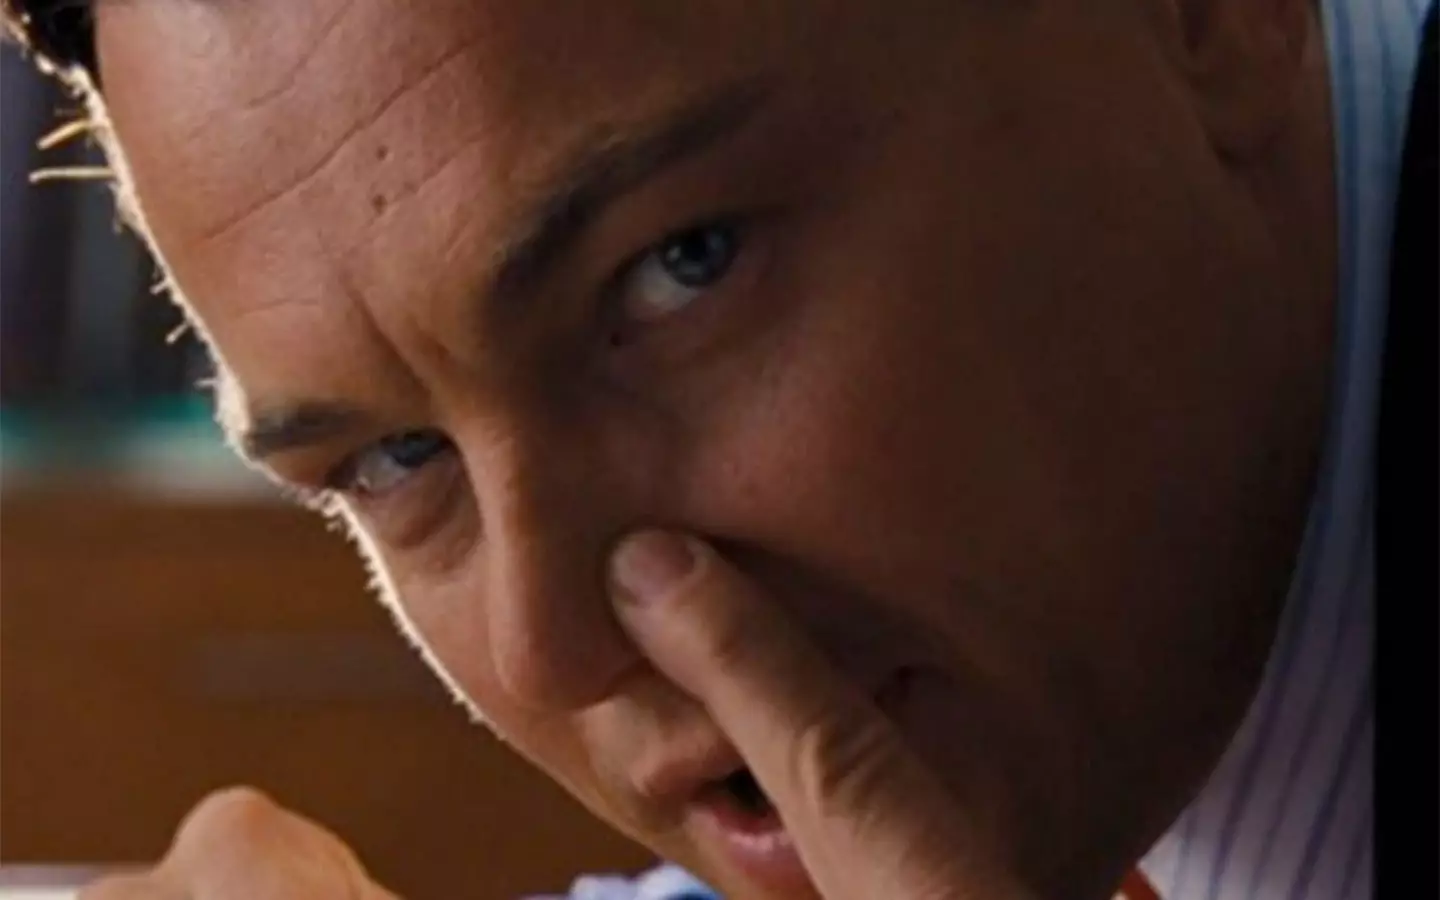 Leonardo DiCaprio's character Jordan Belfort was partial to cocaine.